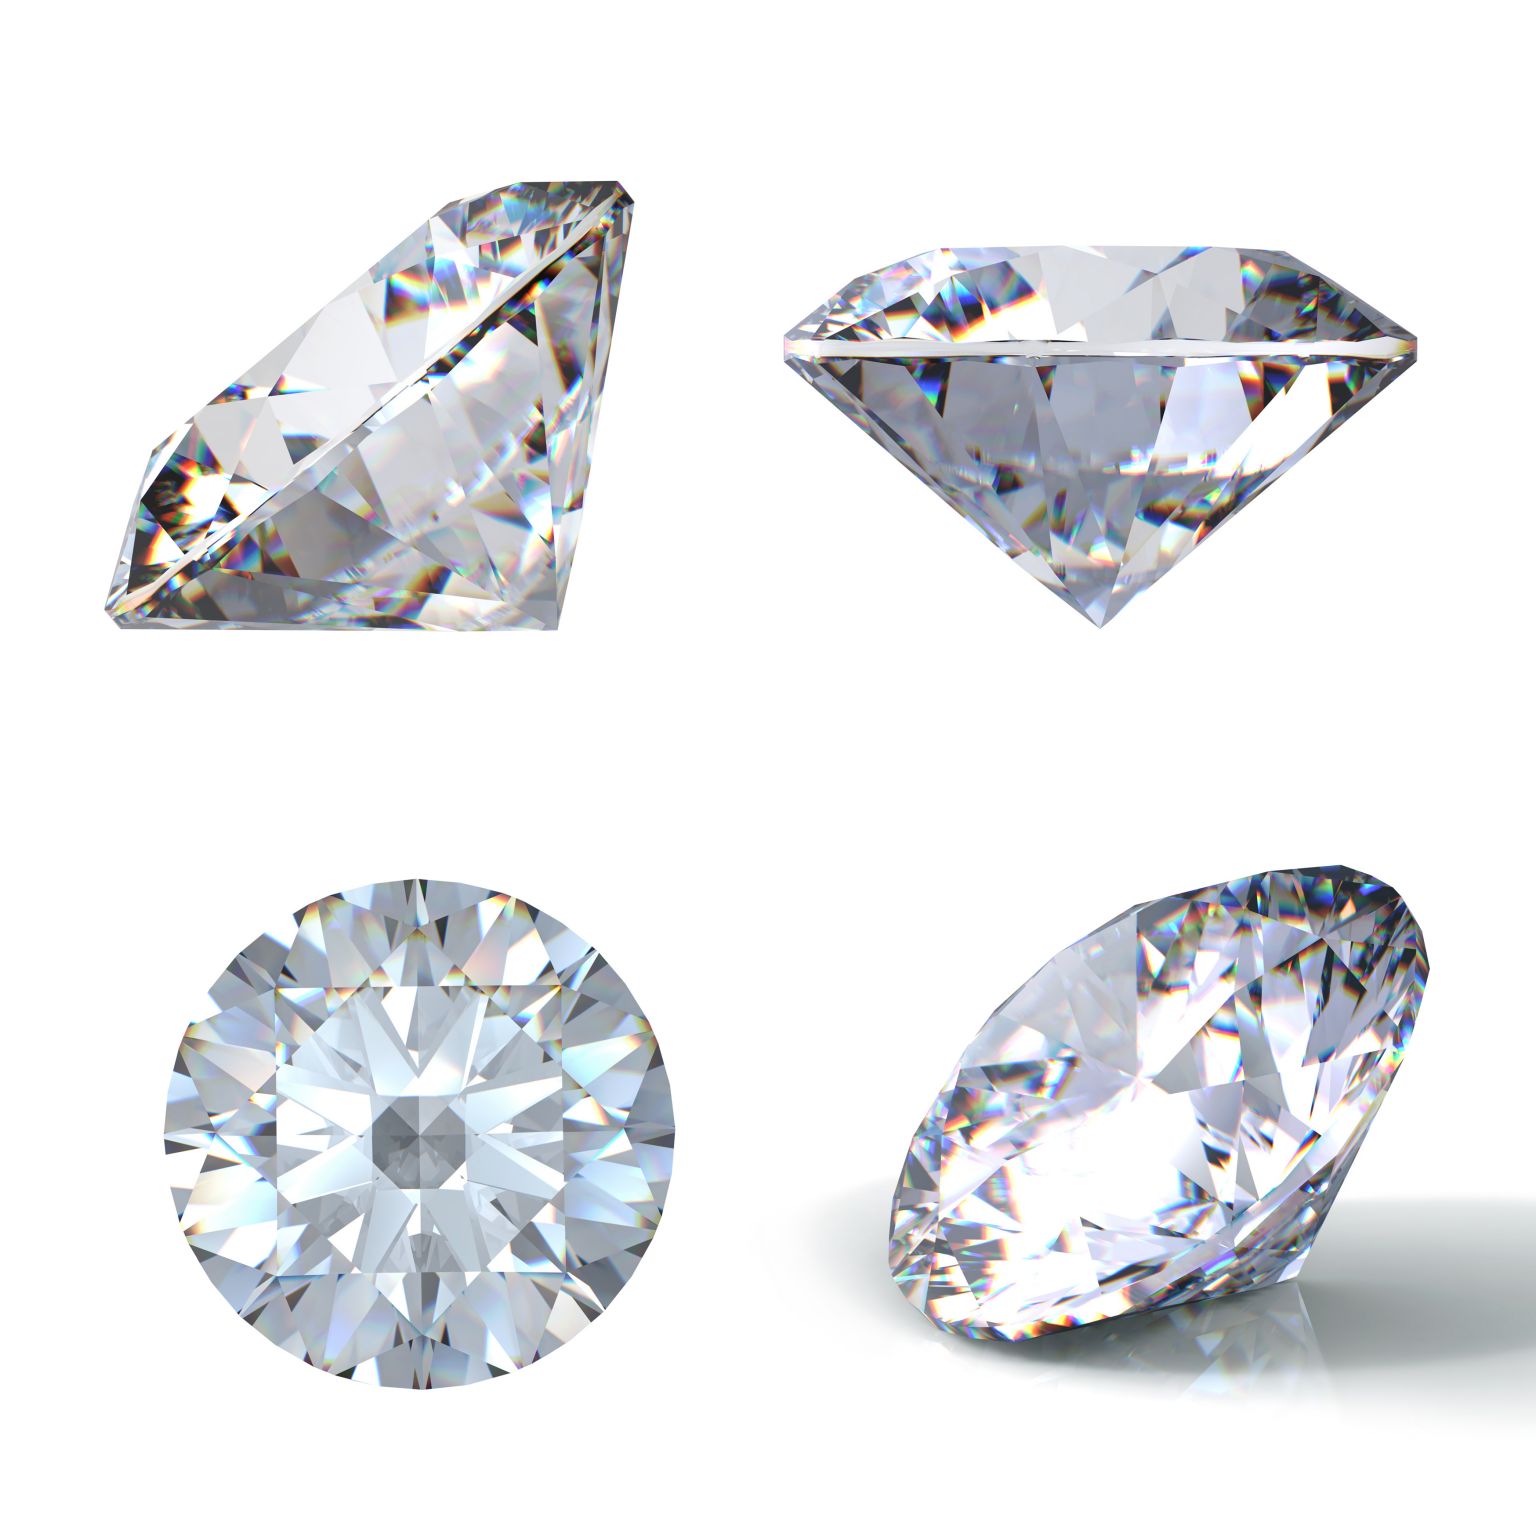 des diamants taillés pour la joaillerie